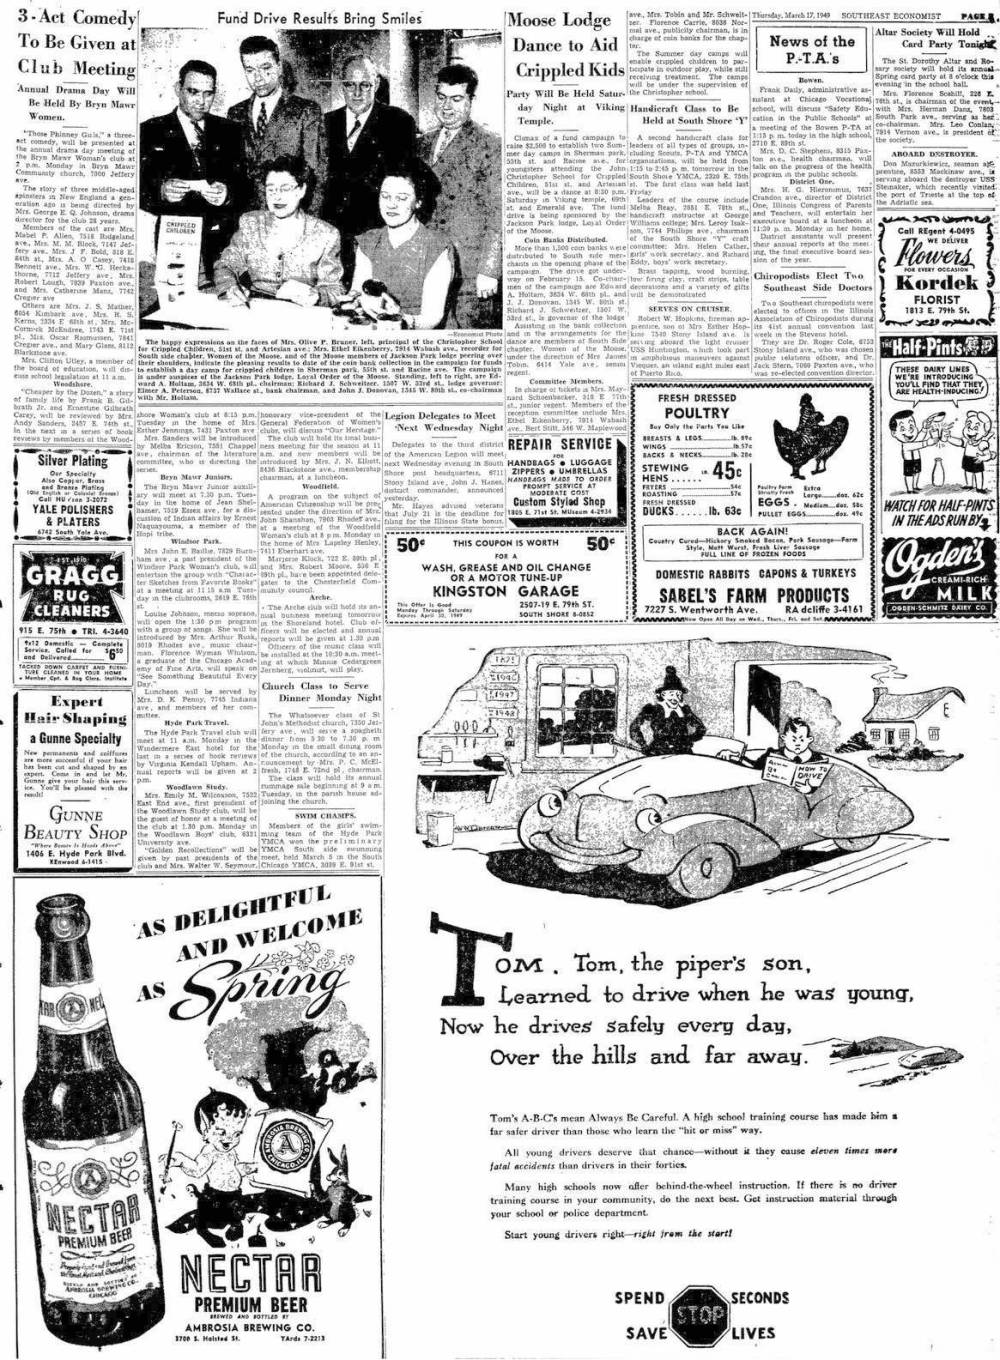 NEWSPAPER - CHICAGO - SOUTHEAST ECONOMIST - AD FOR KORDEK FLOWERS 1813 E 79TH - KINGSTON GARAGE 2507 E 79TH - CUSTOM STYLED SHOP 1805 E 71ST - MARCH 17 1949